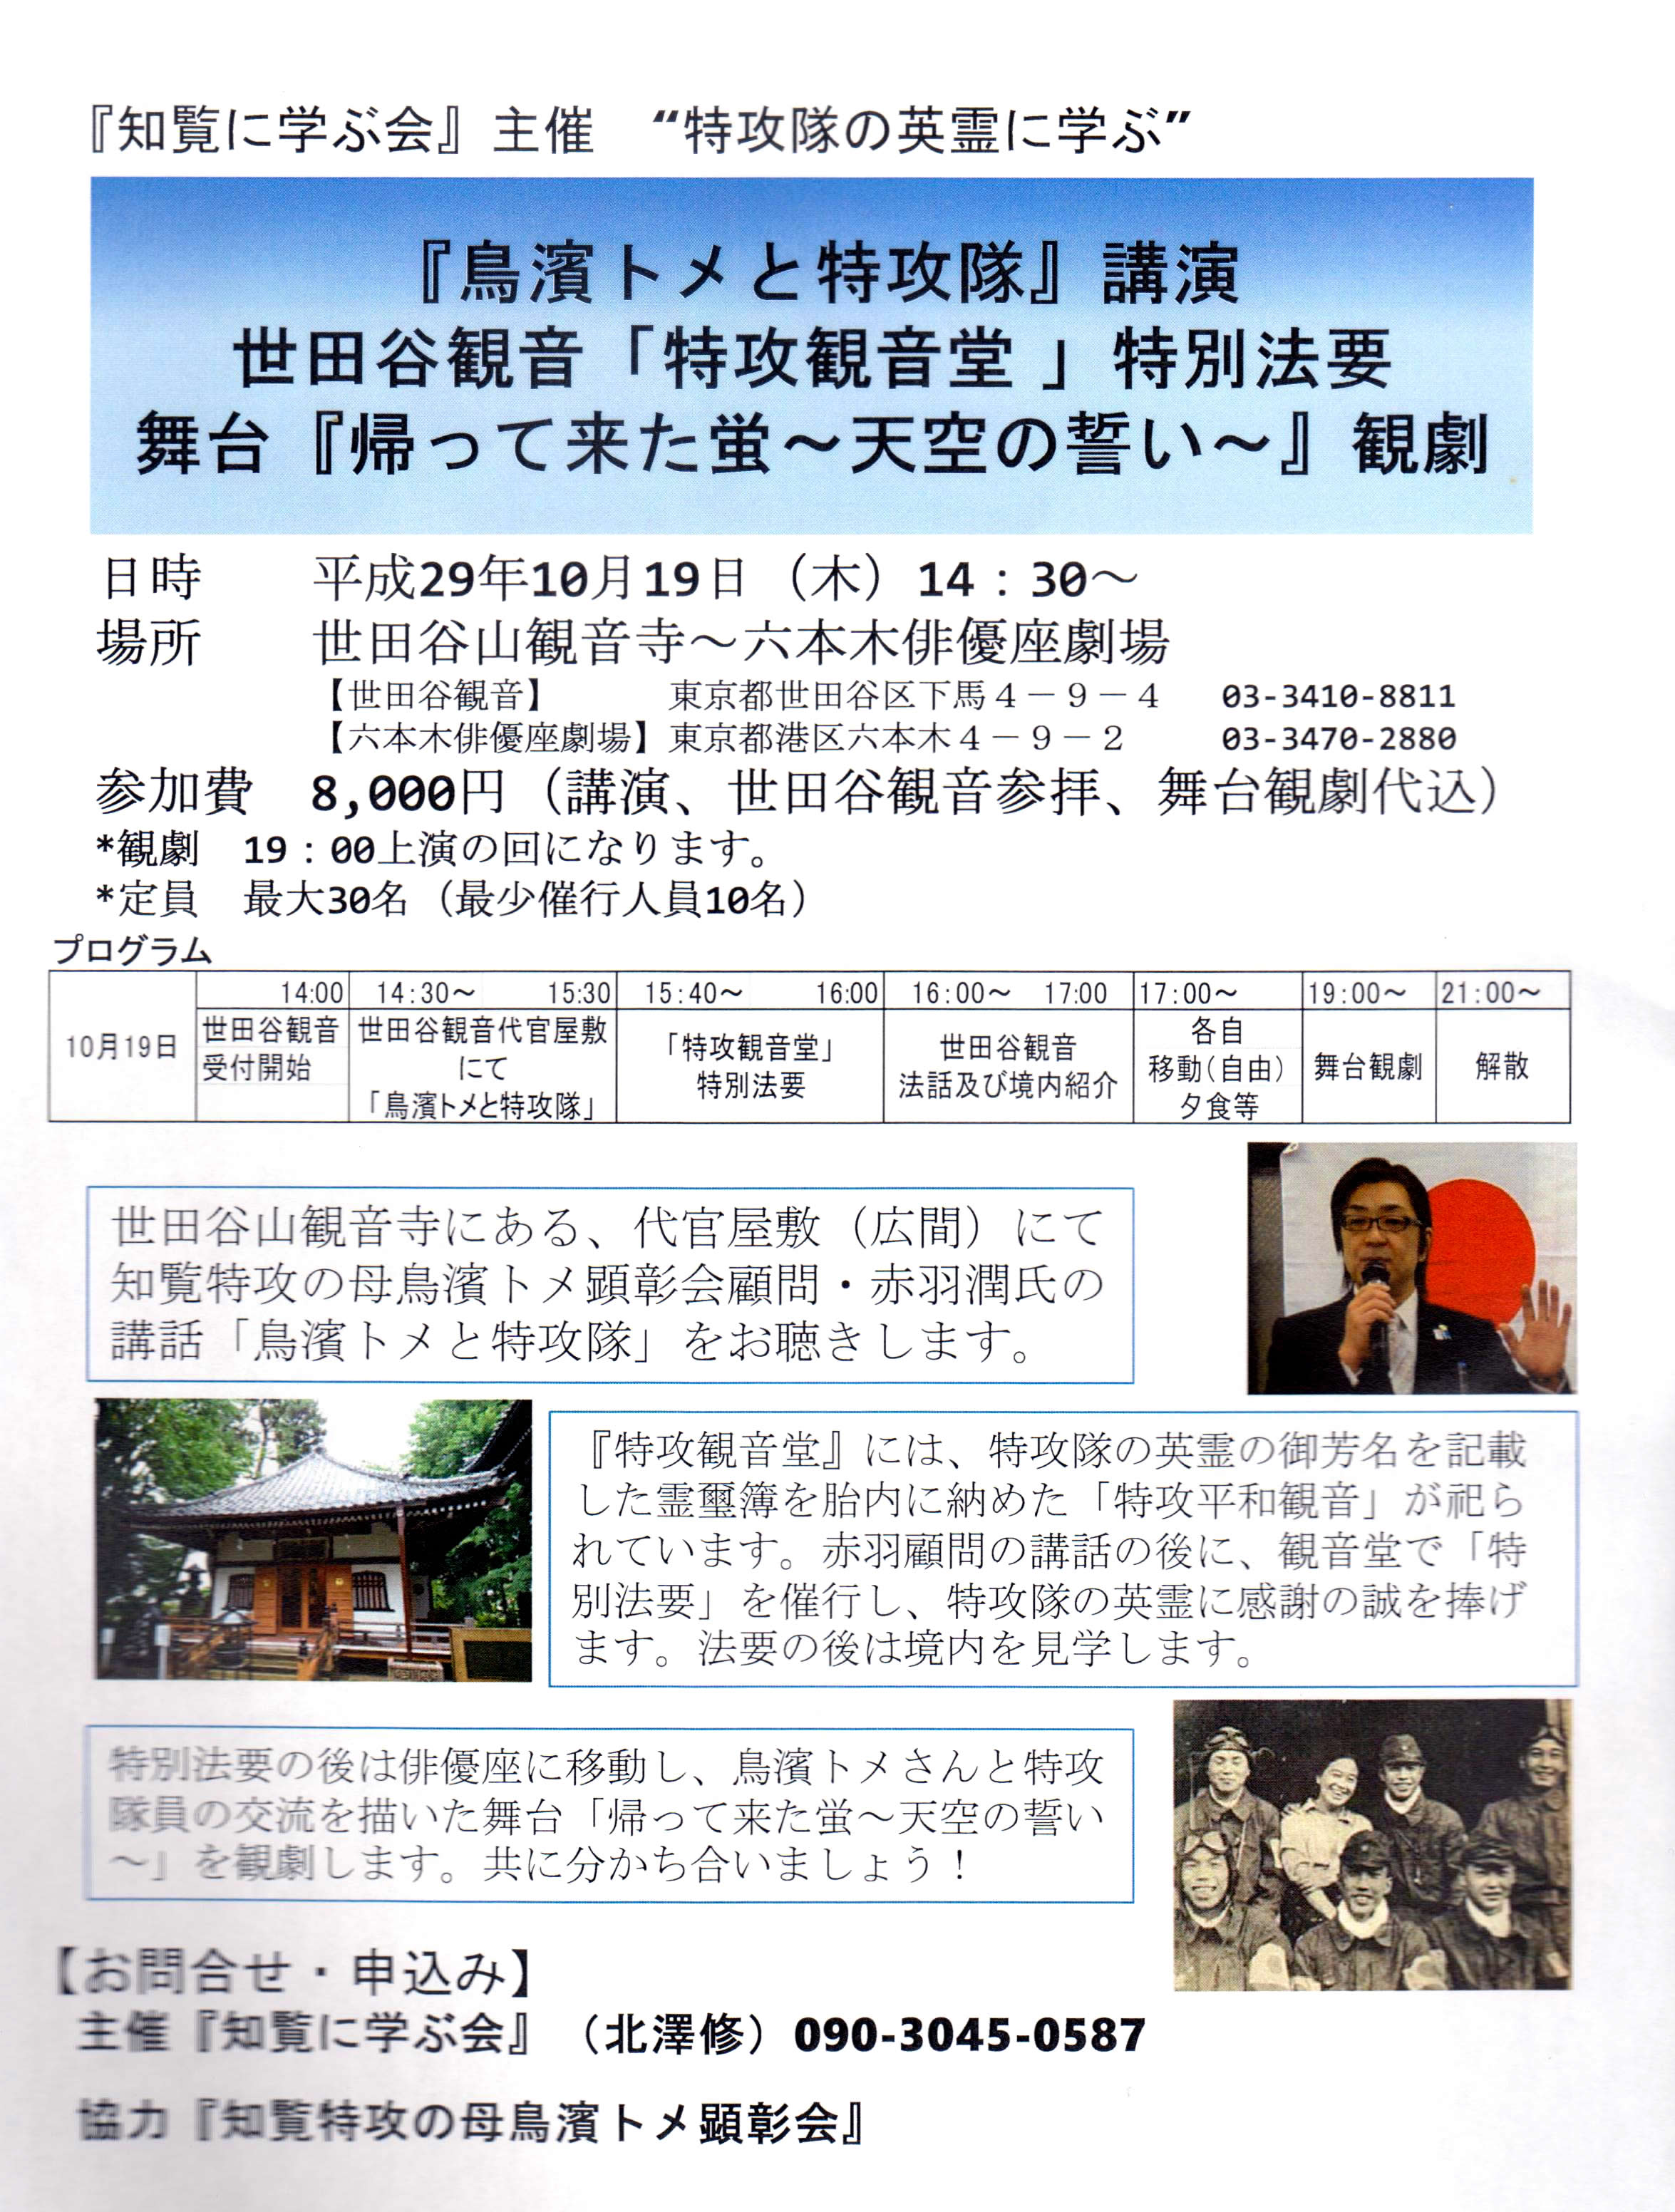 4 001 - ２０１７年１０月７日（土）東京思風塾開催しました。テーマ「愛ある子育てとは～思春期から社会人へ～」